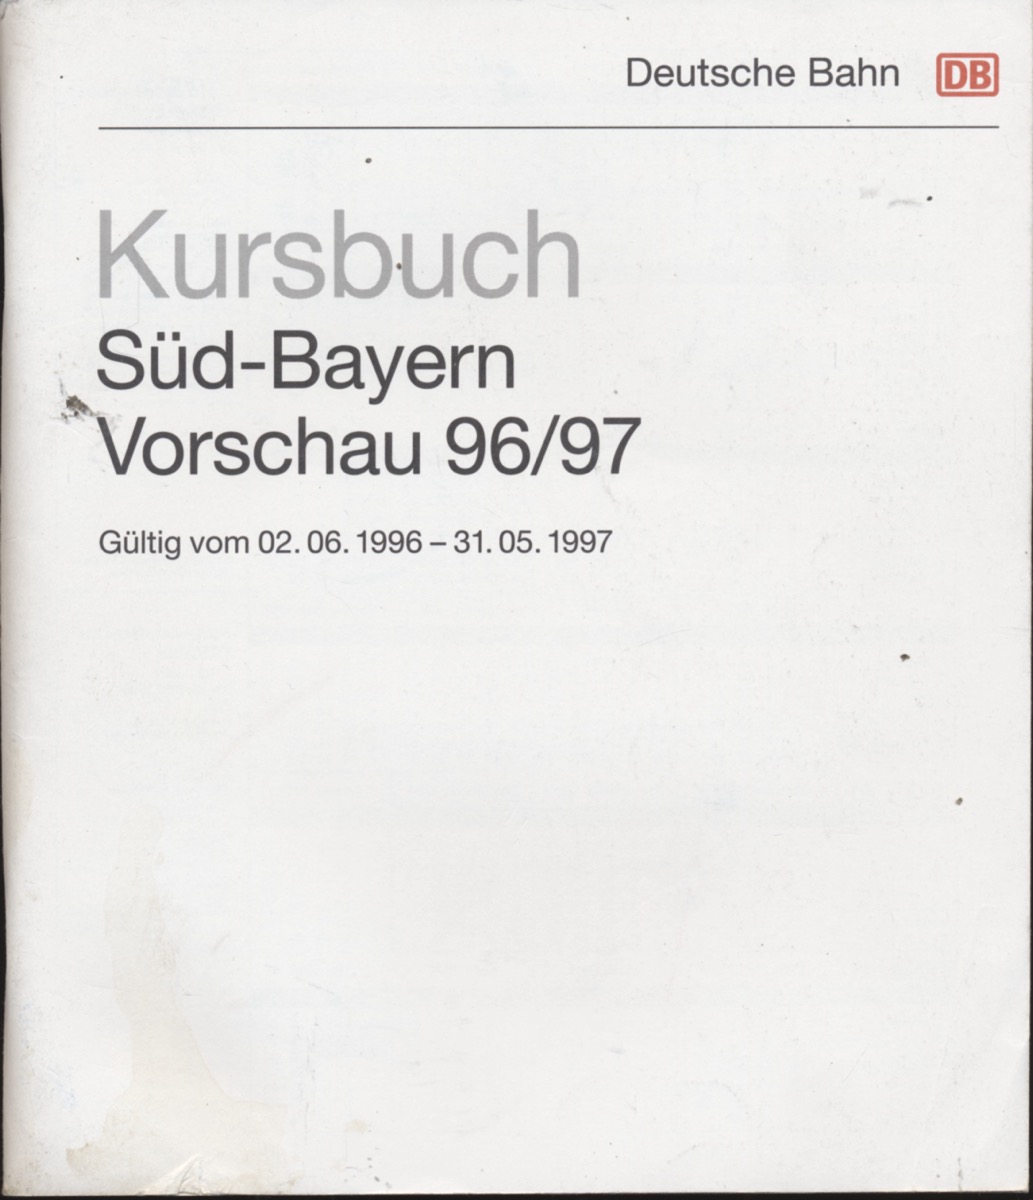 DEUTSCHE BAHN (Hrg.)  Kursbuch 1996/97 Süd-Bayern / Vorschau, gültig vom 02.06.1996 bis 31.05.1997. 